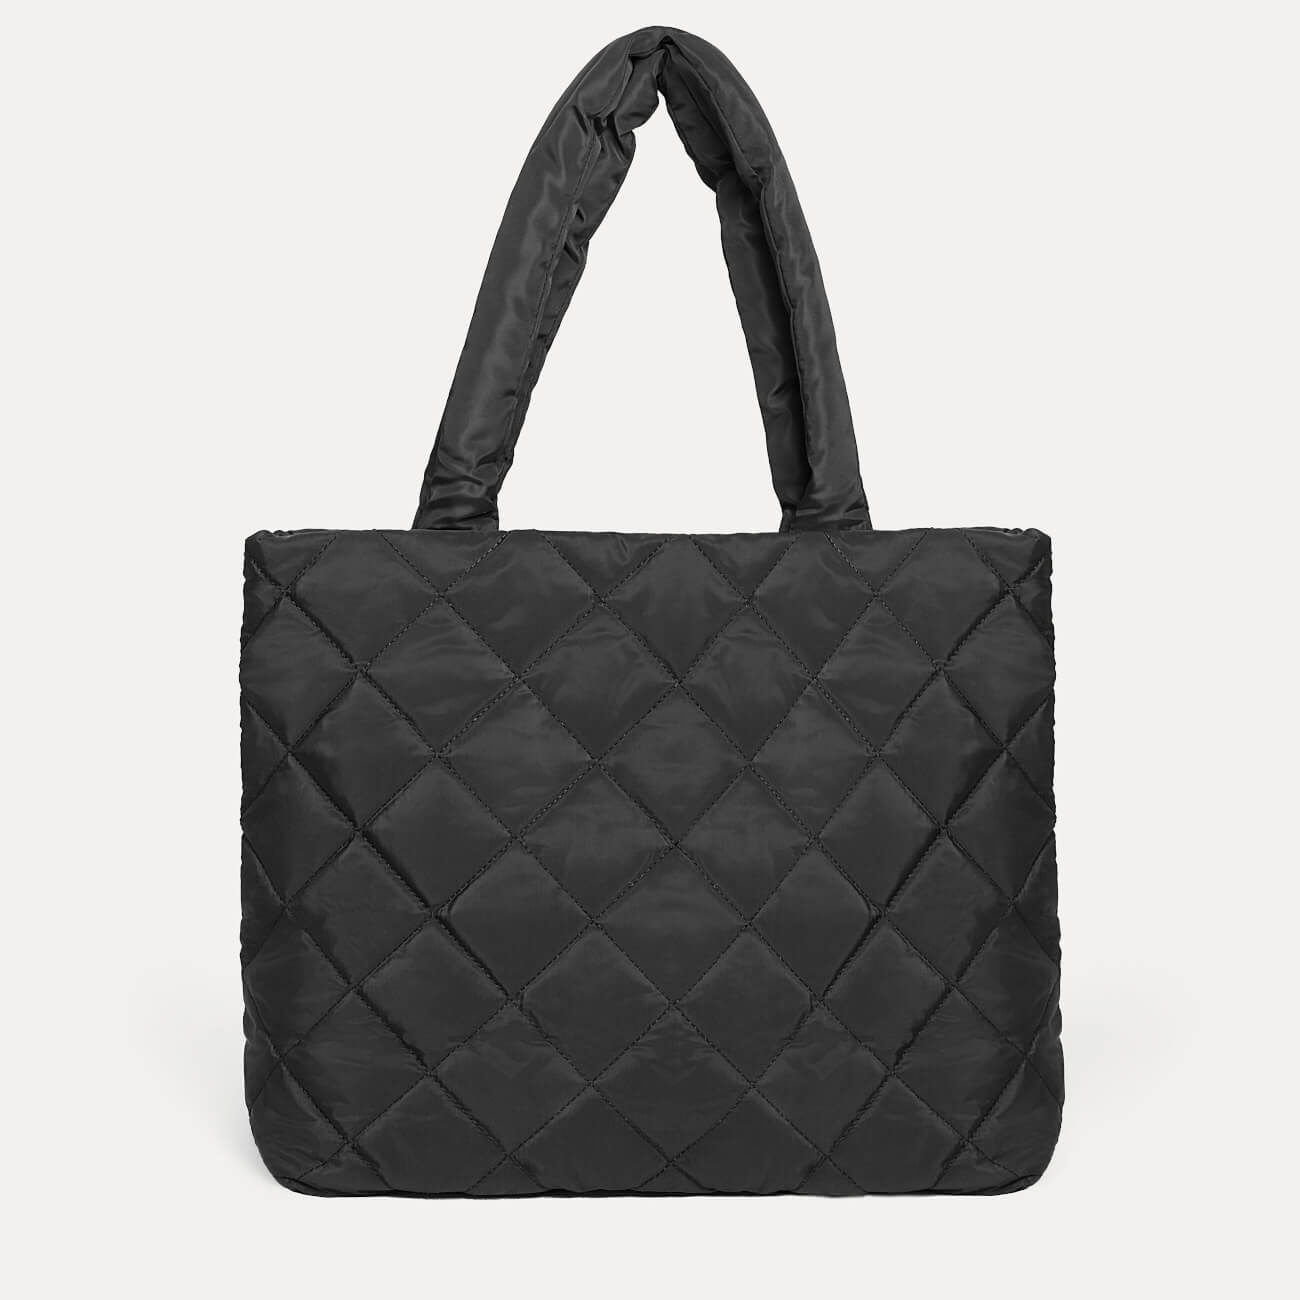 Сумка женская, 45х37 см, стеганая, полиэстер, черная, One stitch сумка шопер счастливый человек 35 0 5 40 принт с блестками без подклада черная